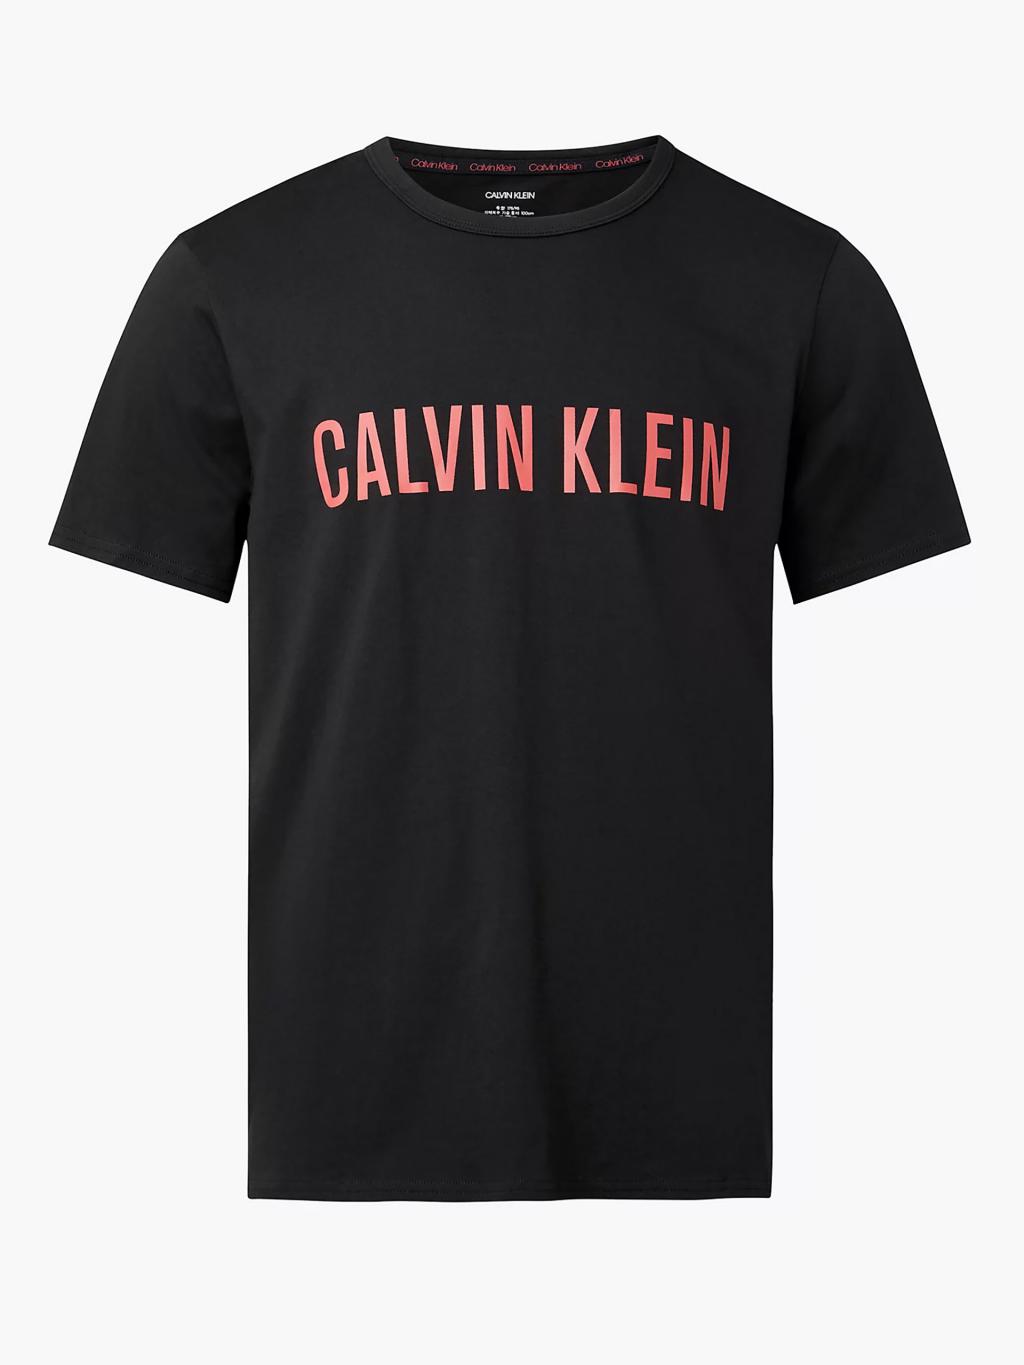 NM1959/XY8 - pánský set Calvin Klein